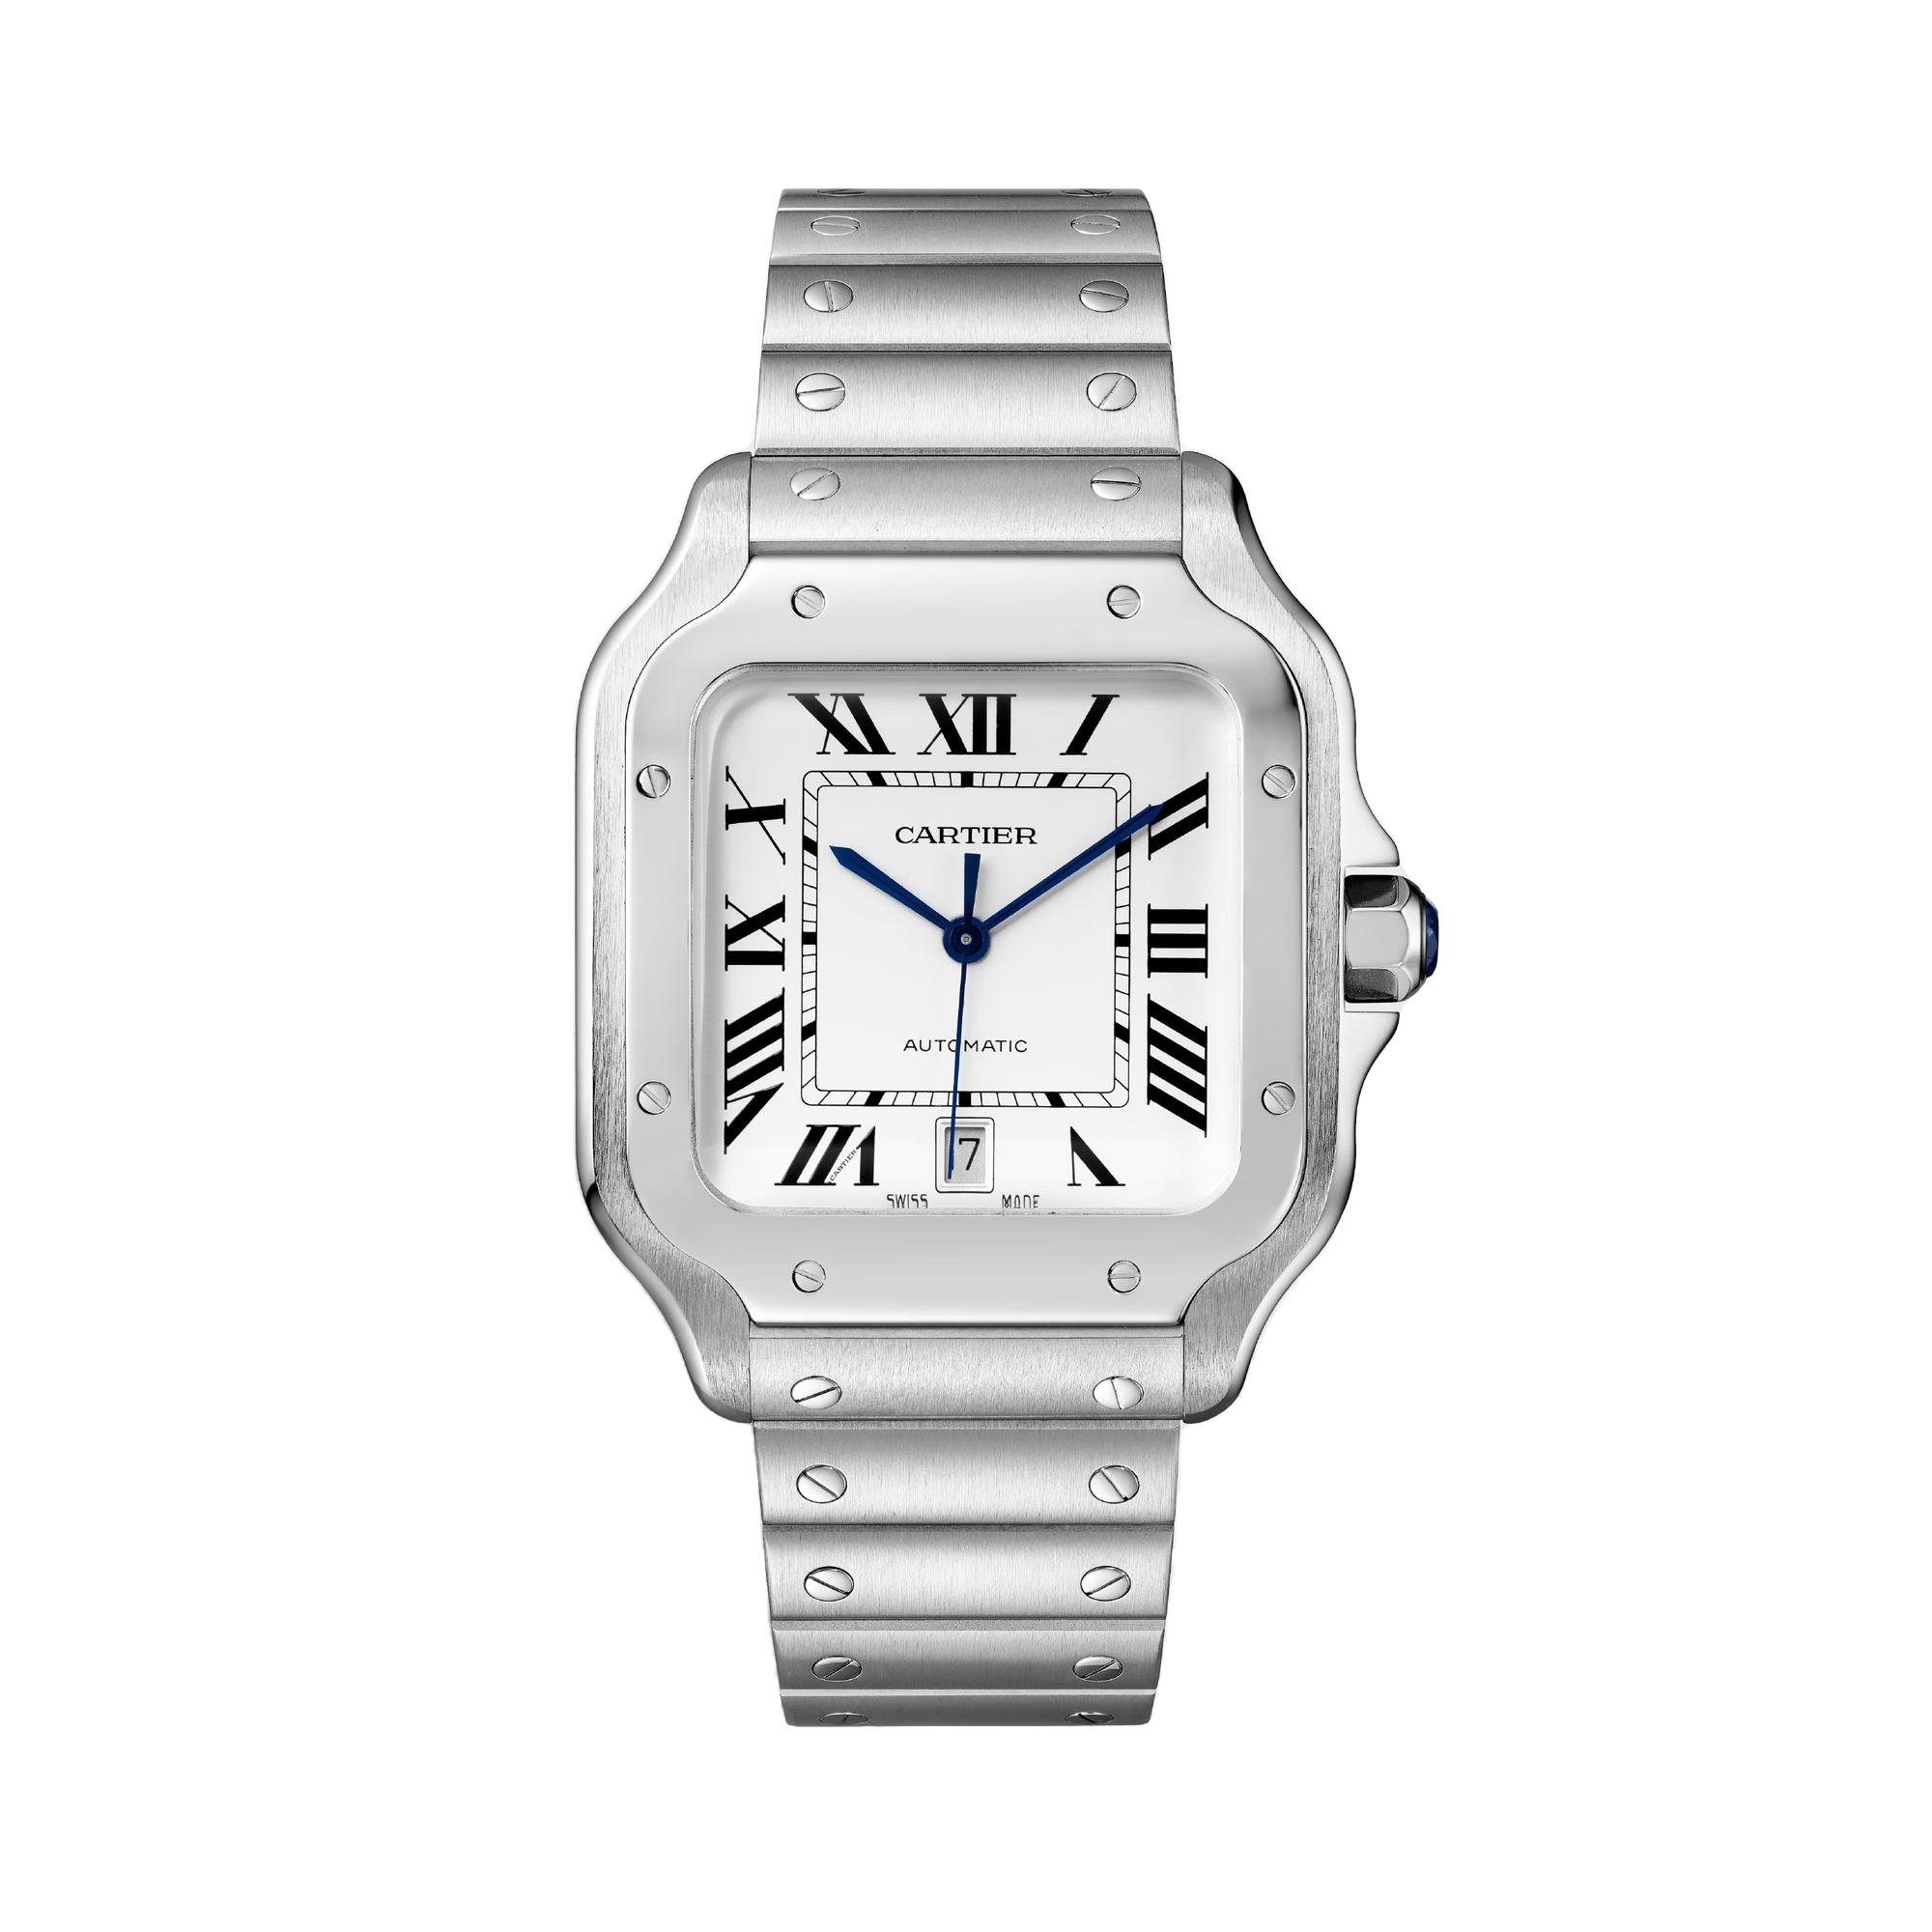 Santos de Cartier Watch, size large